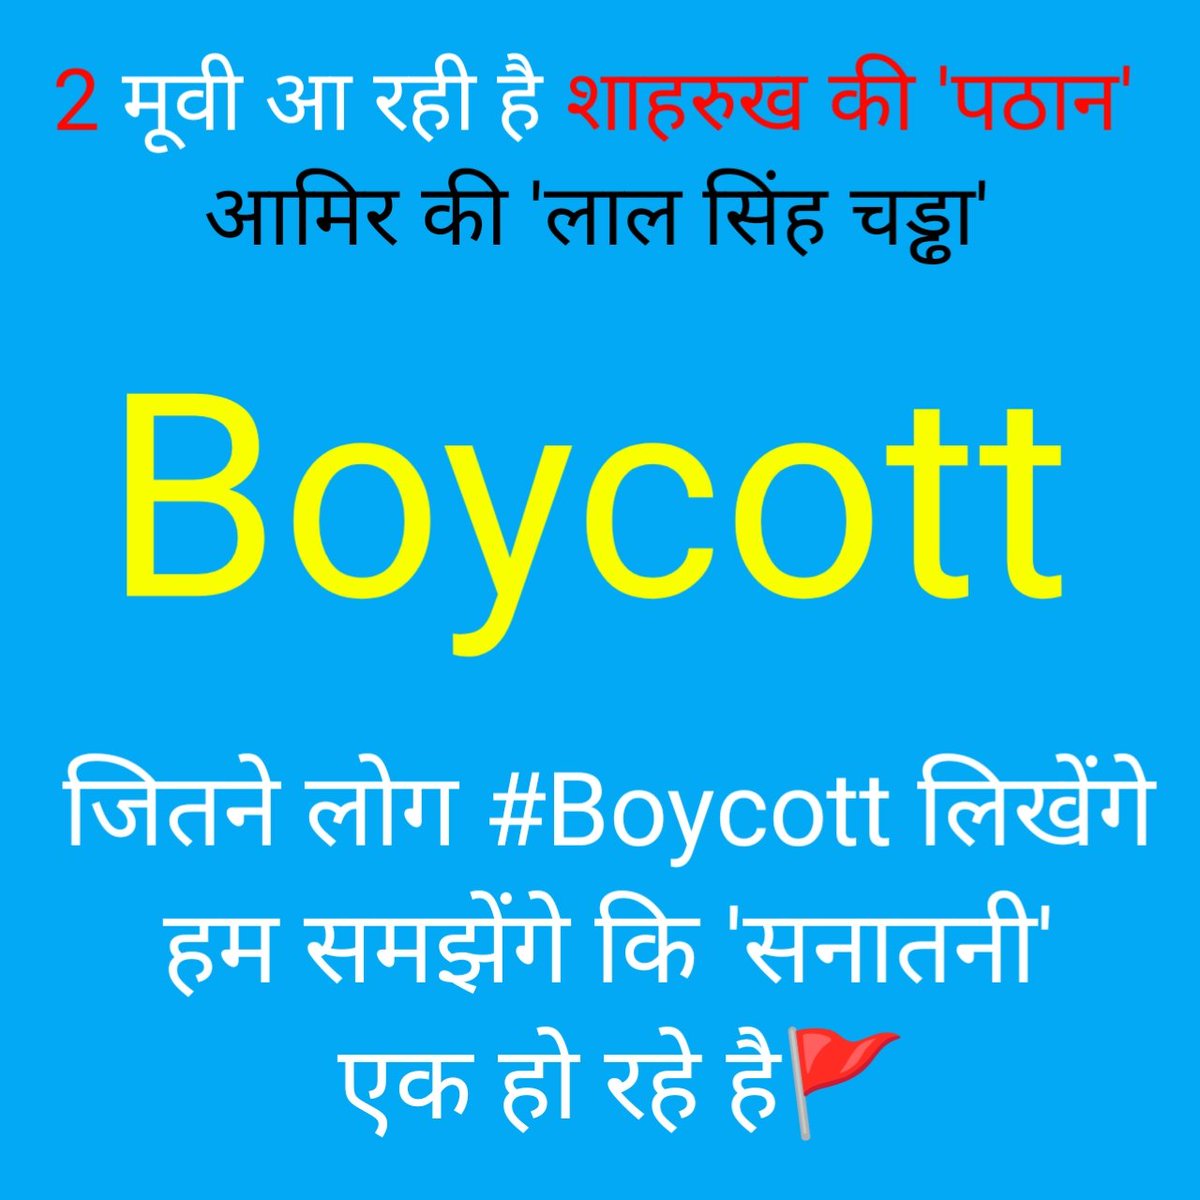 #INDvsPAK #JusticeForHYYH #BoycottBrahmastra #BoycottLigerMovie #BoycottPathanMovie #BoycottBollywood #boycottkareenakapoor #BoycottbollywoodCompletely #IndiaVsPakistan #ViratKohli𓃵 #RohitSharma𓃵 #NarendraModi #YogiAdityanath  #BiharPolitics #RajaSingh #Hyderabad